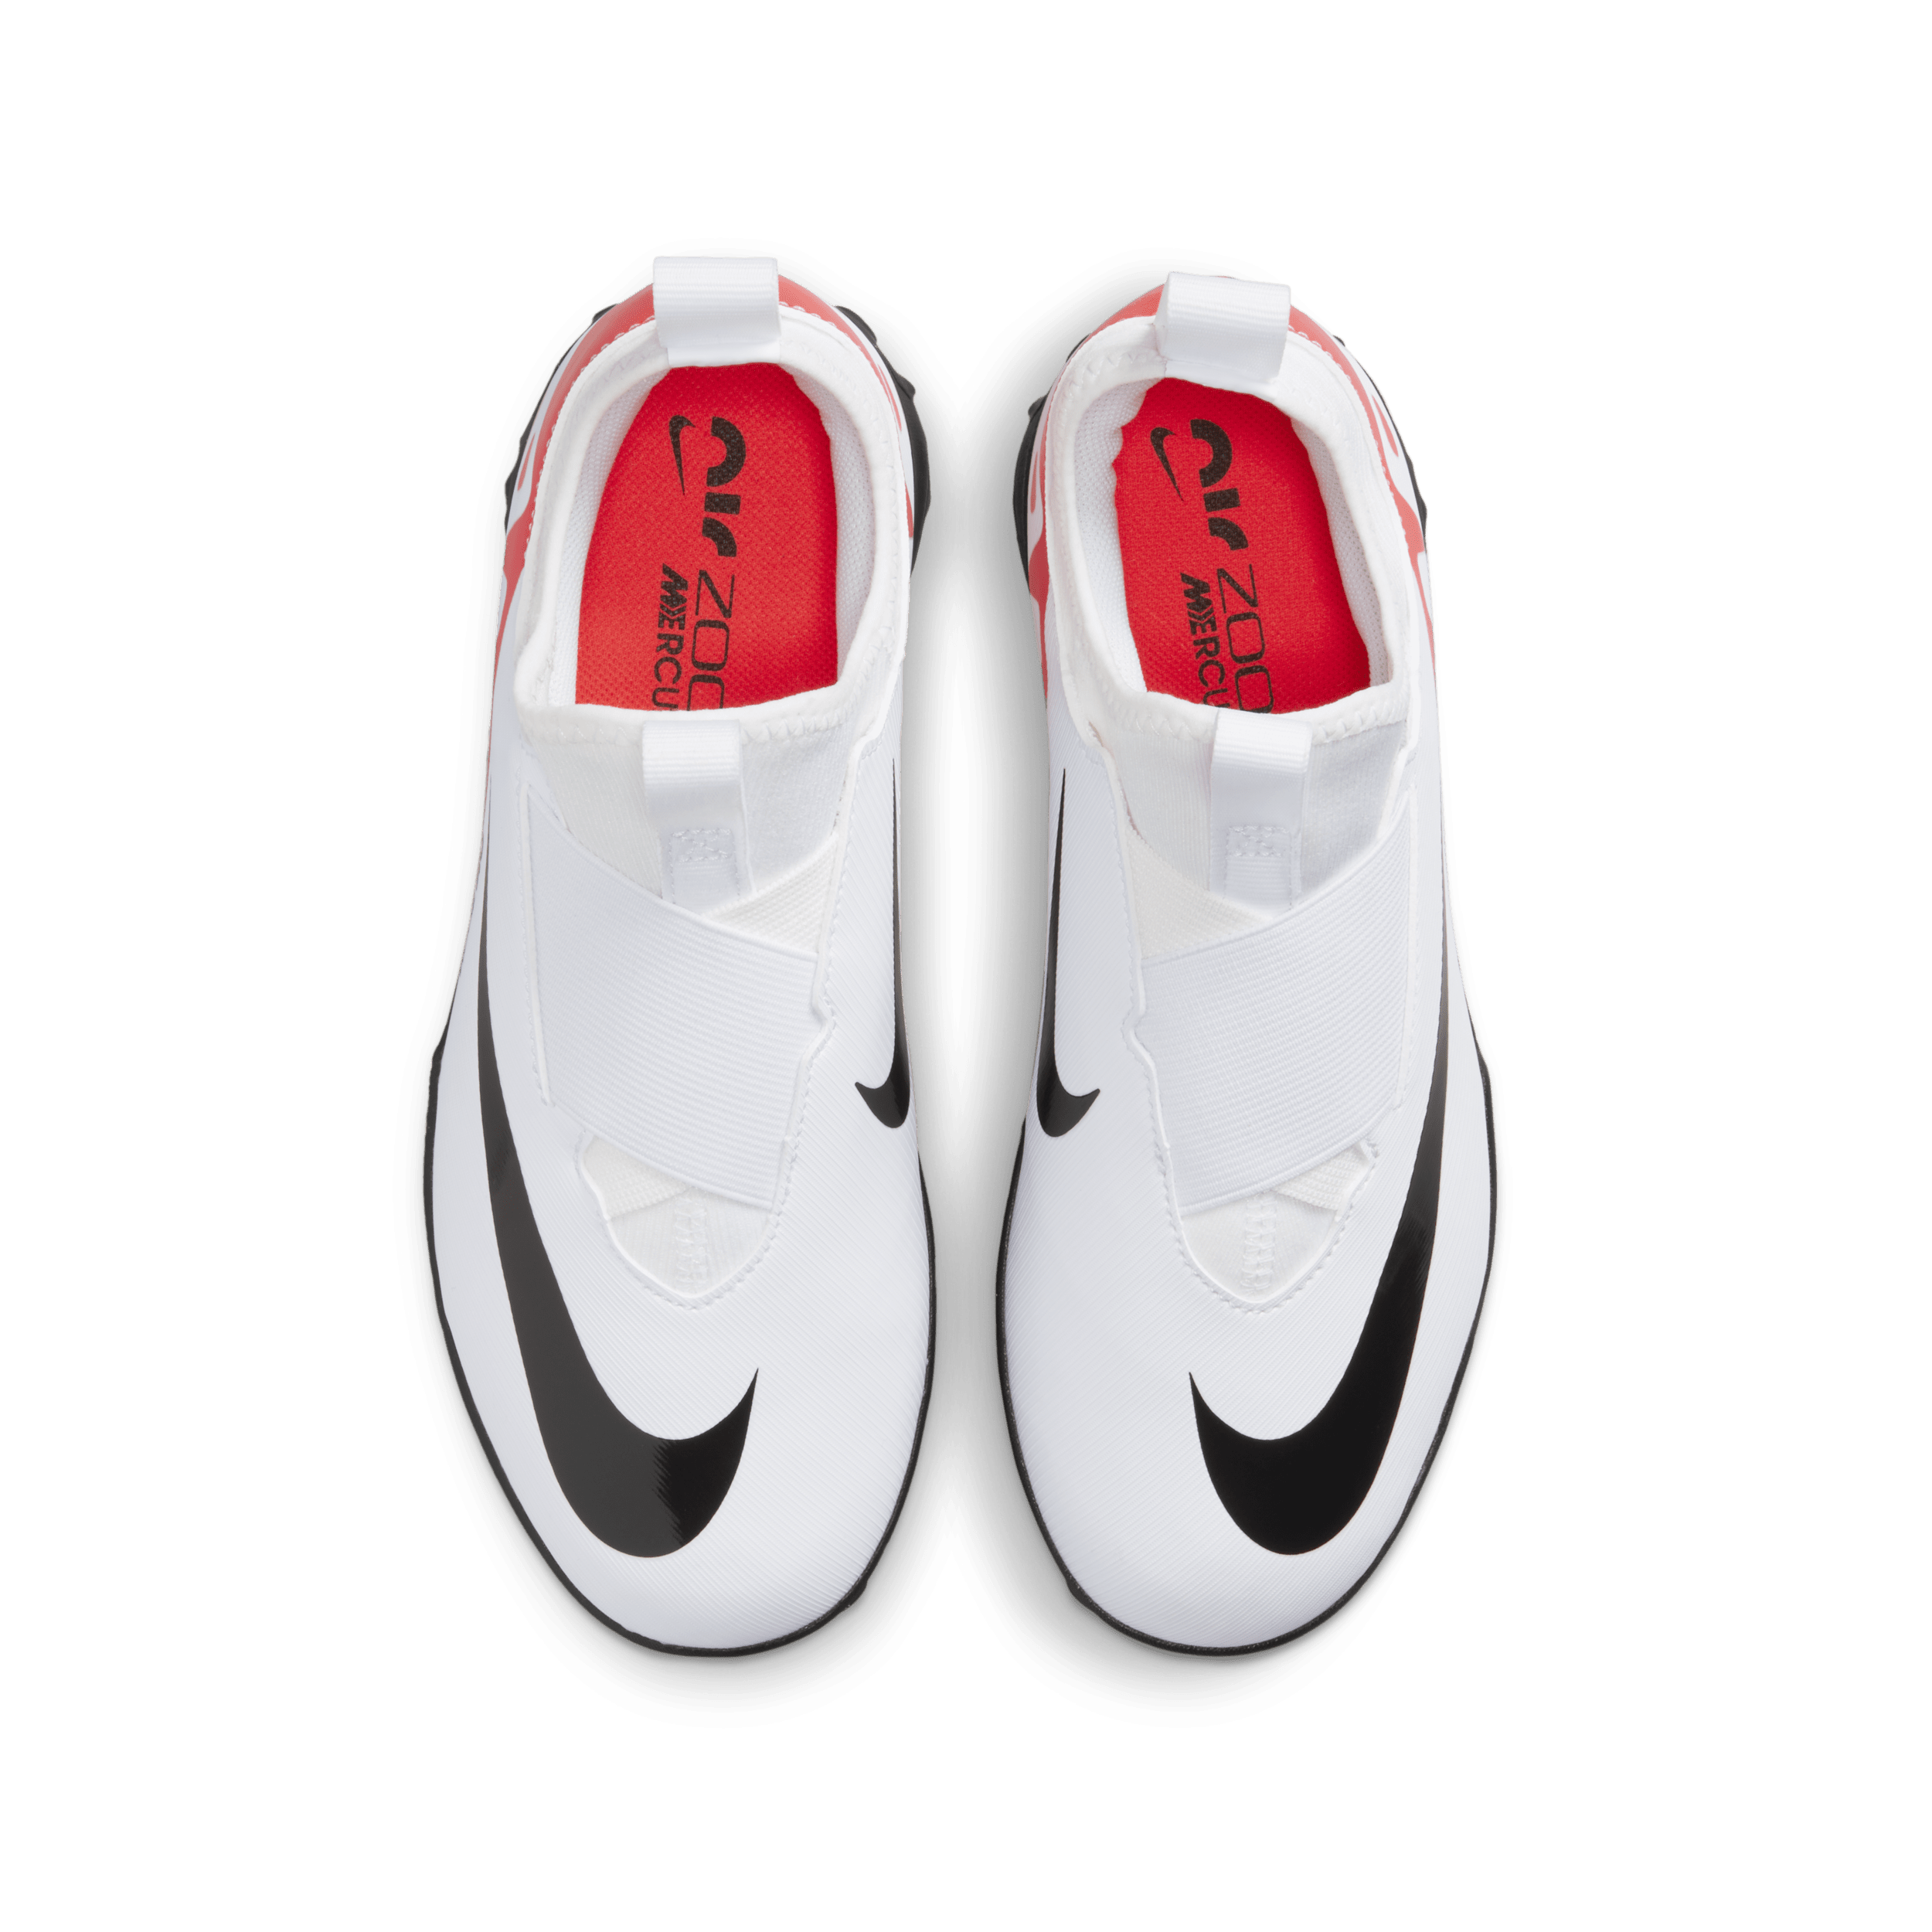 Nike Jr. Mercurial Vapor 15 Academy low top voetbalschoenen voor kleuters kids (turf) Rood